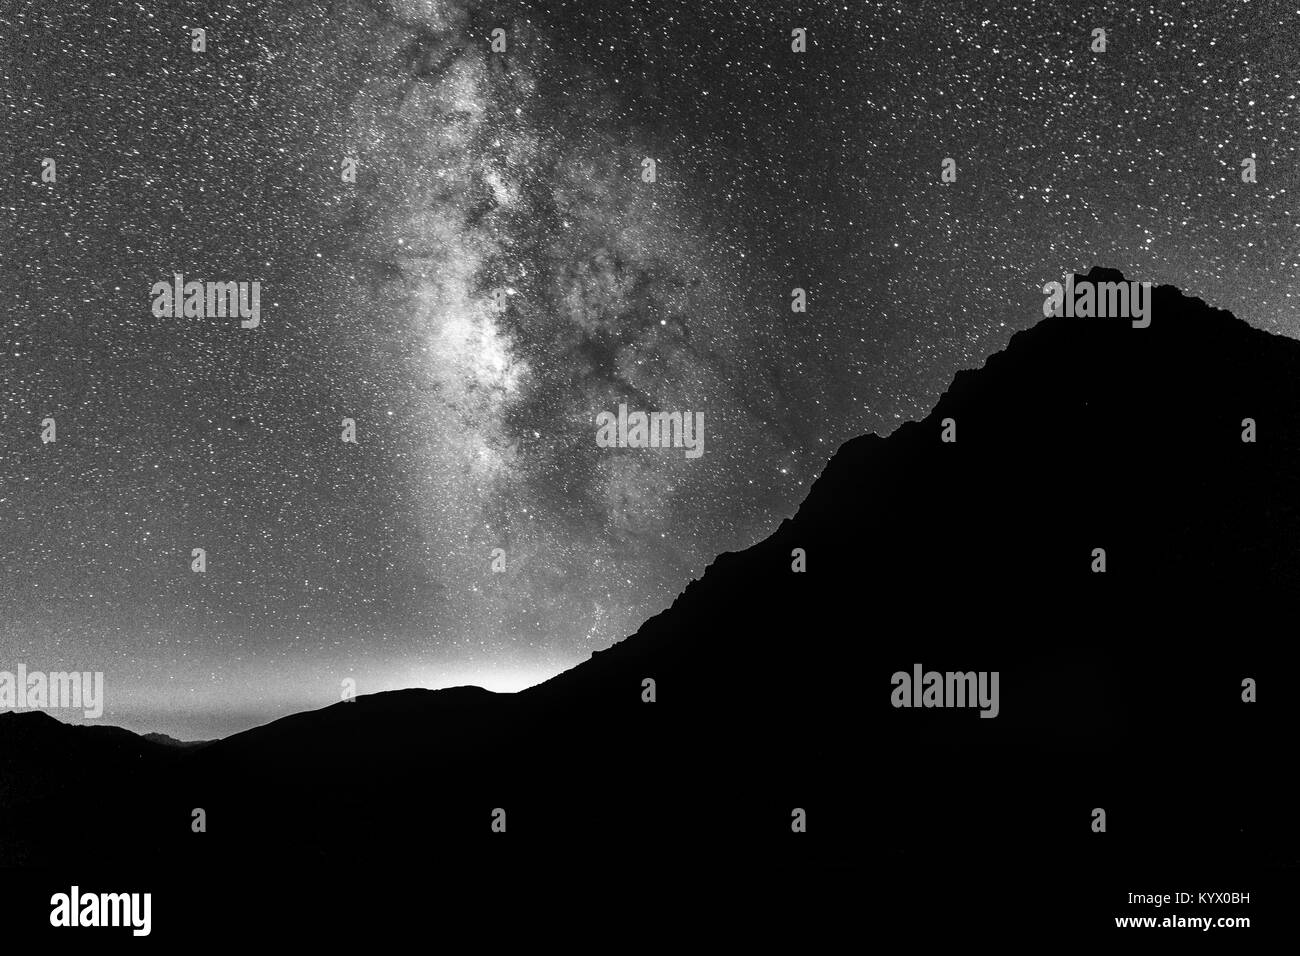 Galaxia visto desde Satsar camping en la región de los grandes lagos de Cachemira trek en Sonamarg, Jammu y Cachemira, en la India. Cielo lleno de estrellas, Astronomía Foto de stock